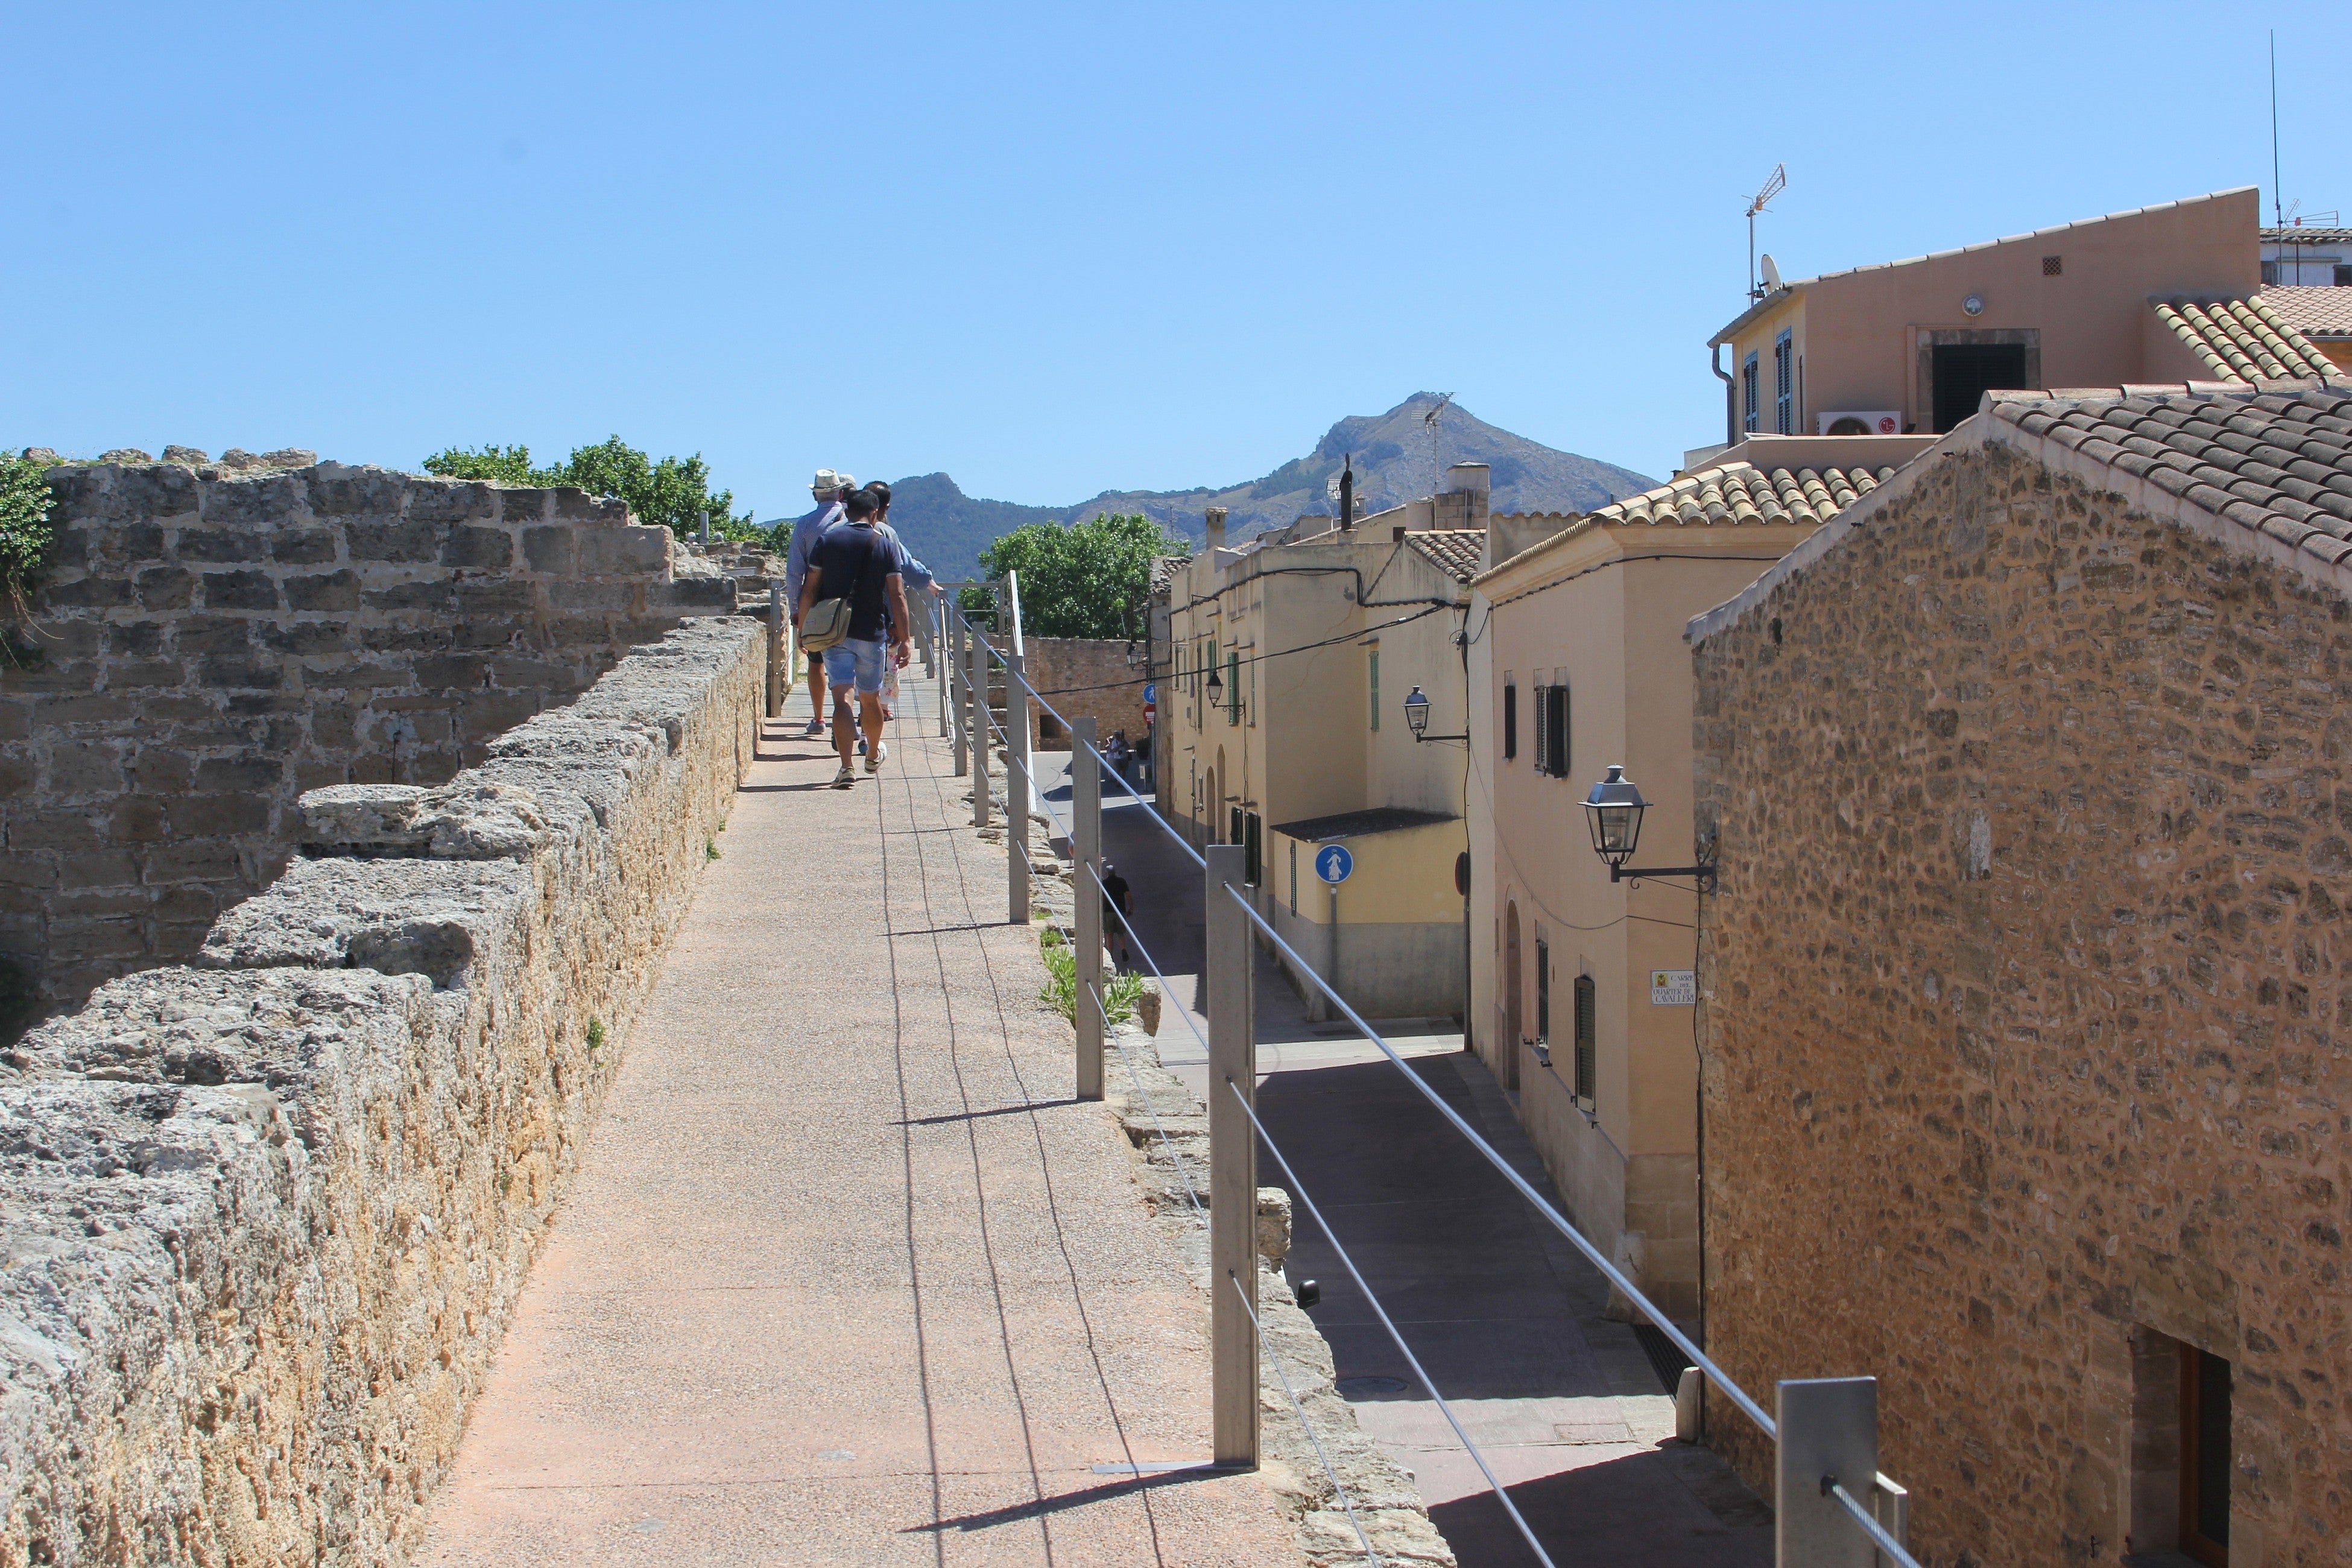 2. Explore the Alcúdia Walls - Tourists walk on the ancient city walls in Alcudia, Mallorca, Spain